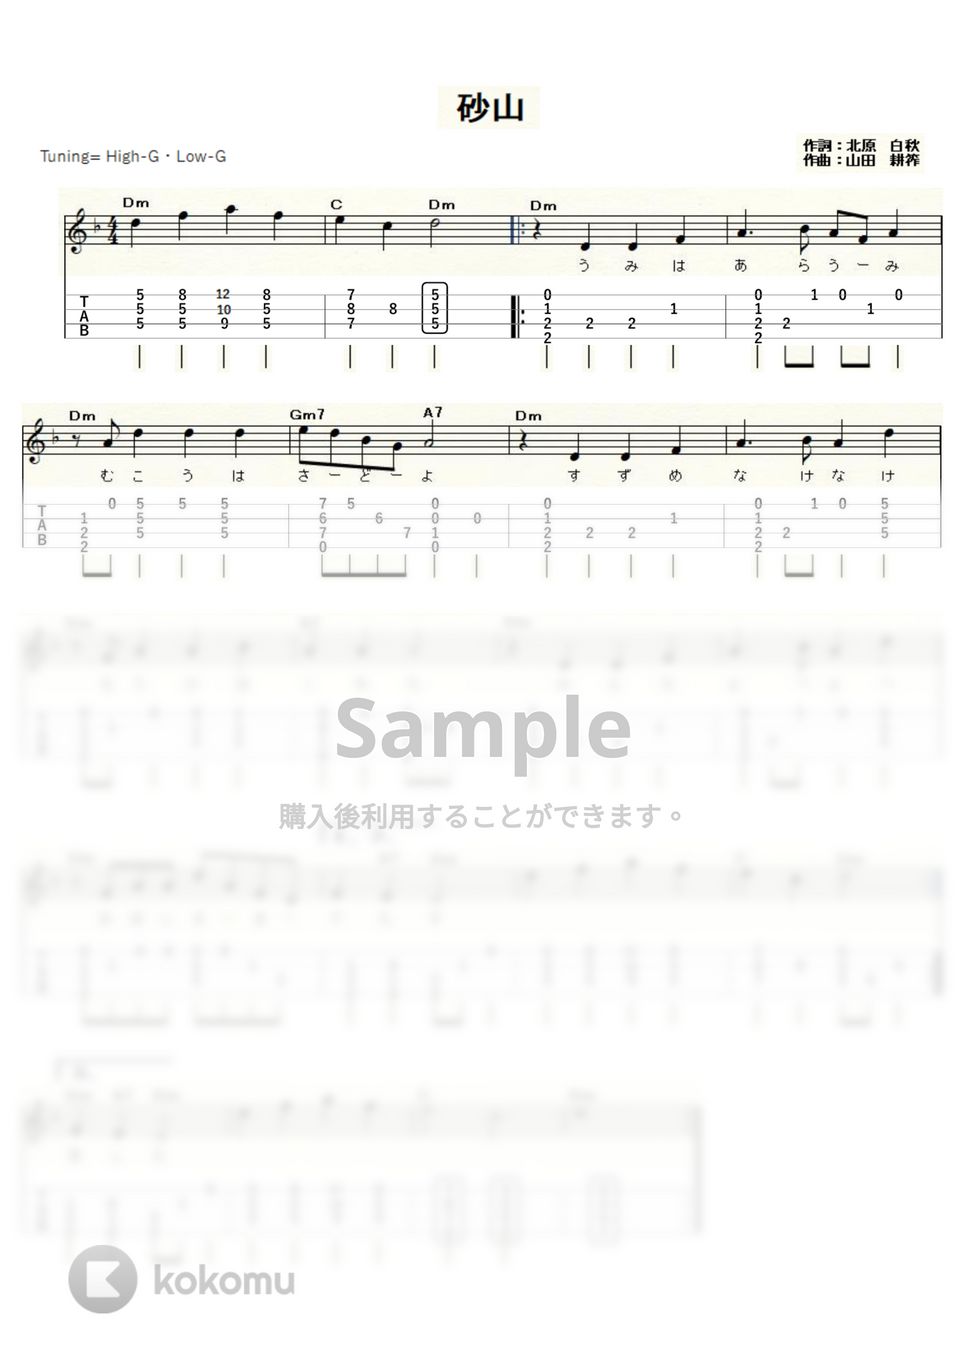 砂山（中山晋平・山田耕筰） (ｳｸﾚﾚｿﾛ / High-G・Low-G / 中級) by ukulelepapa